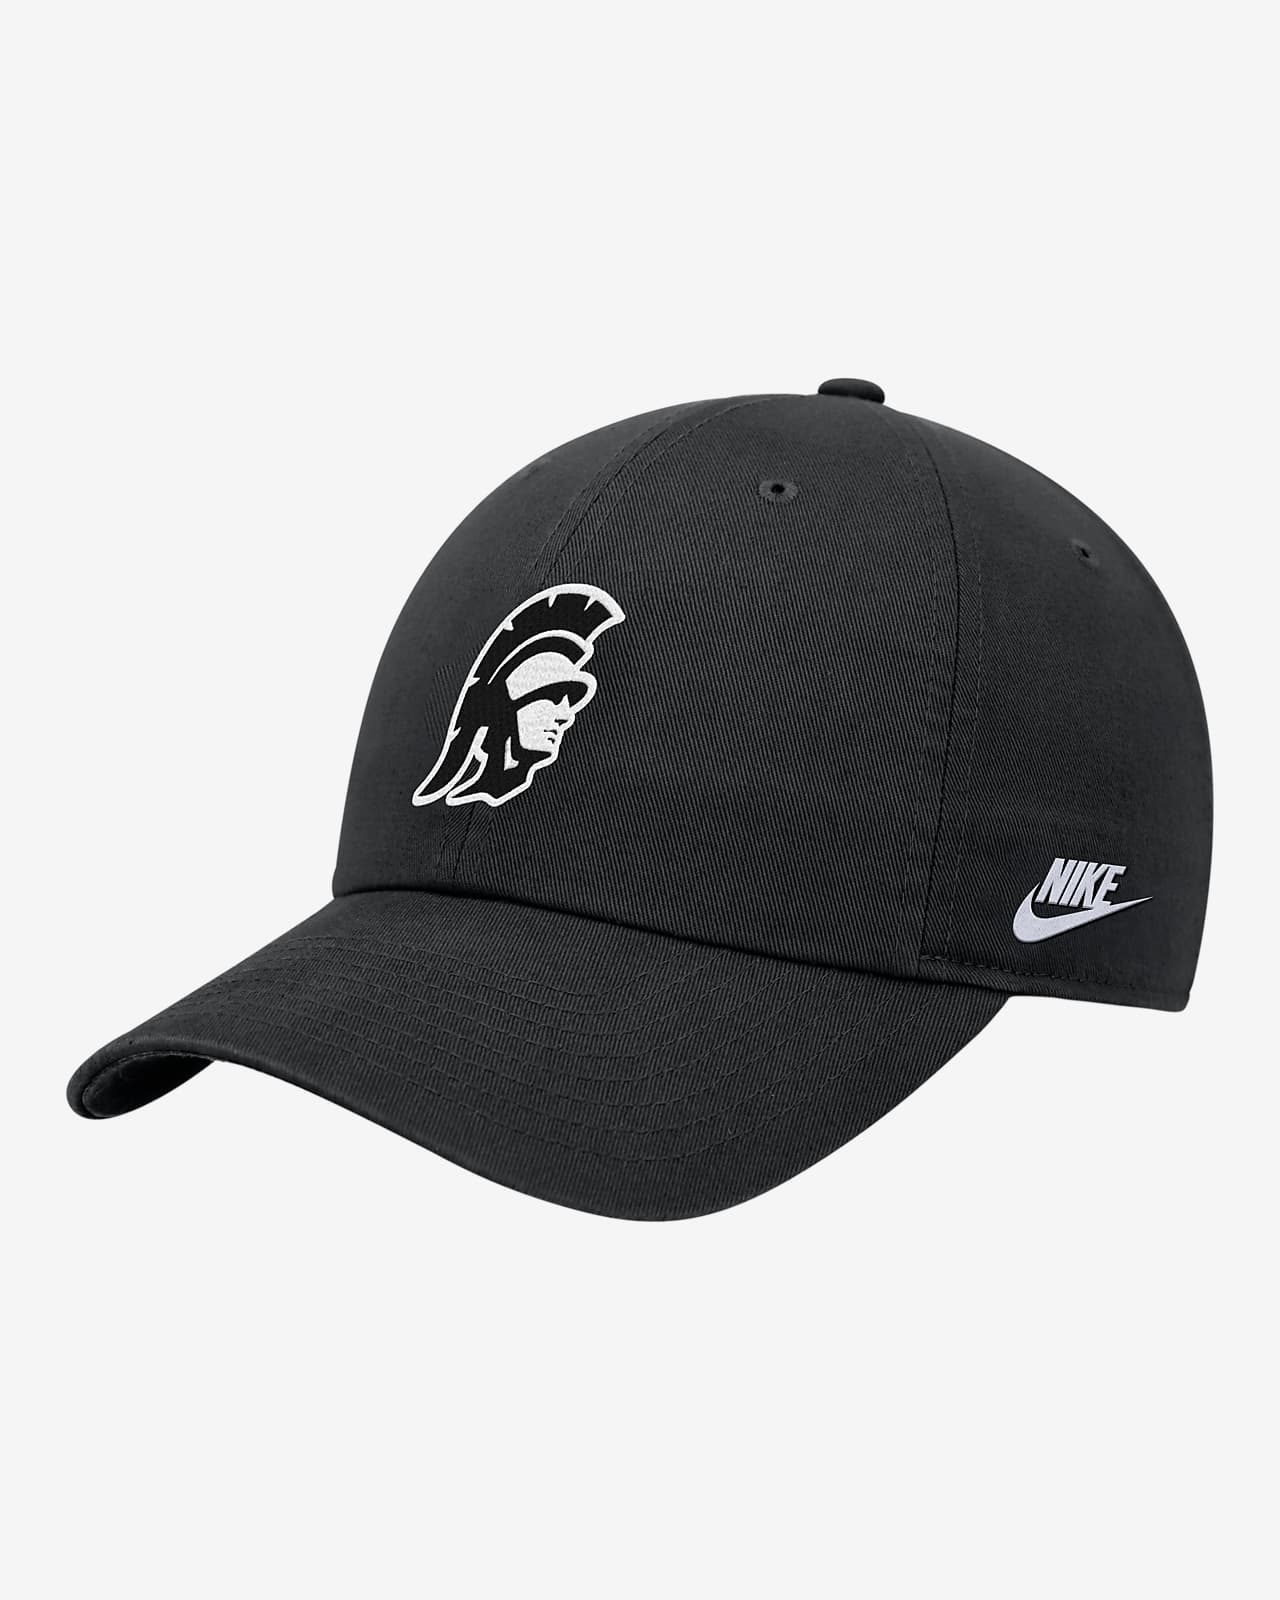 USC Nike College Cap